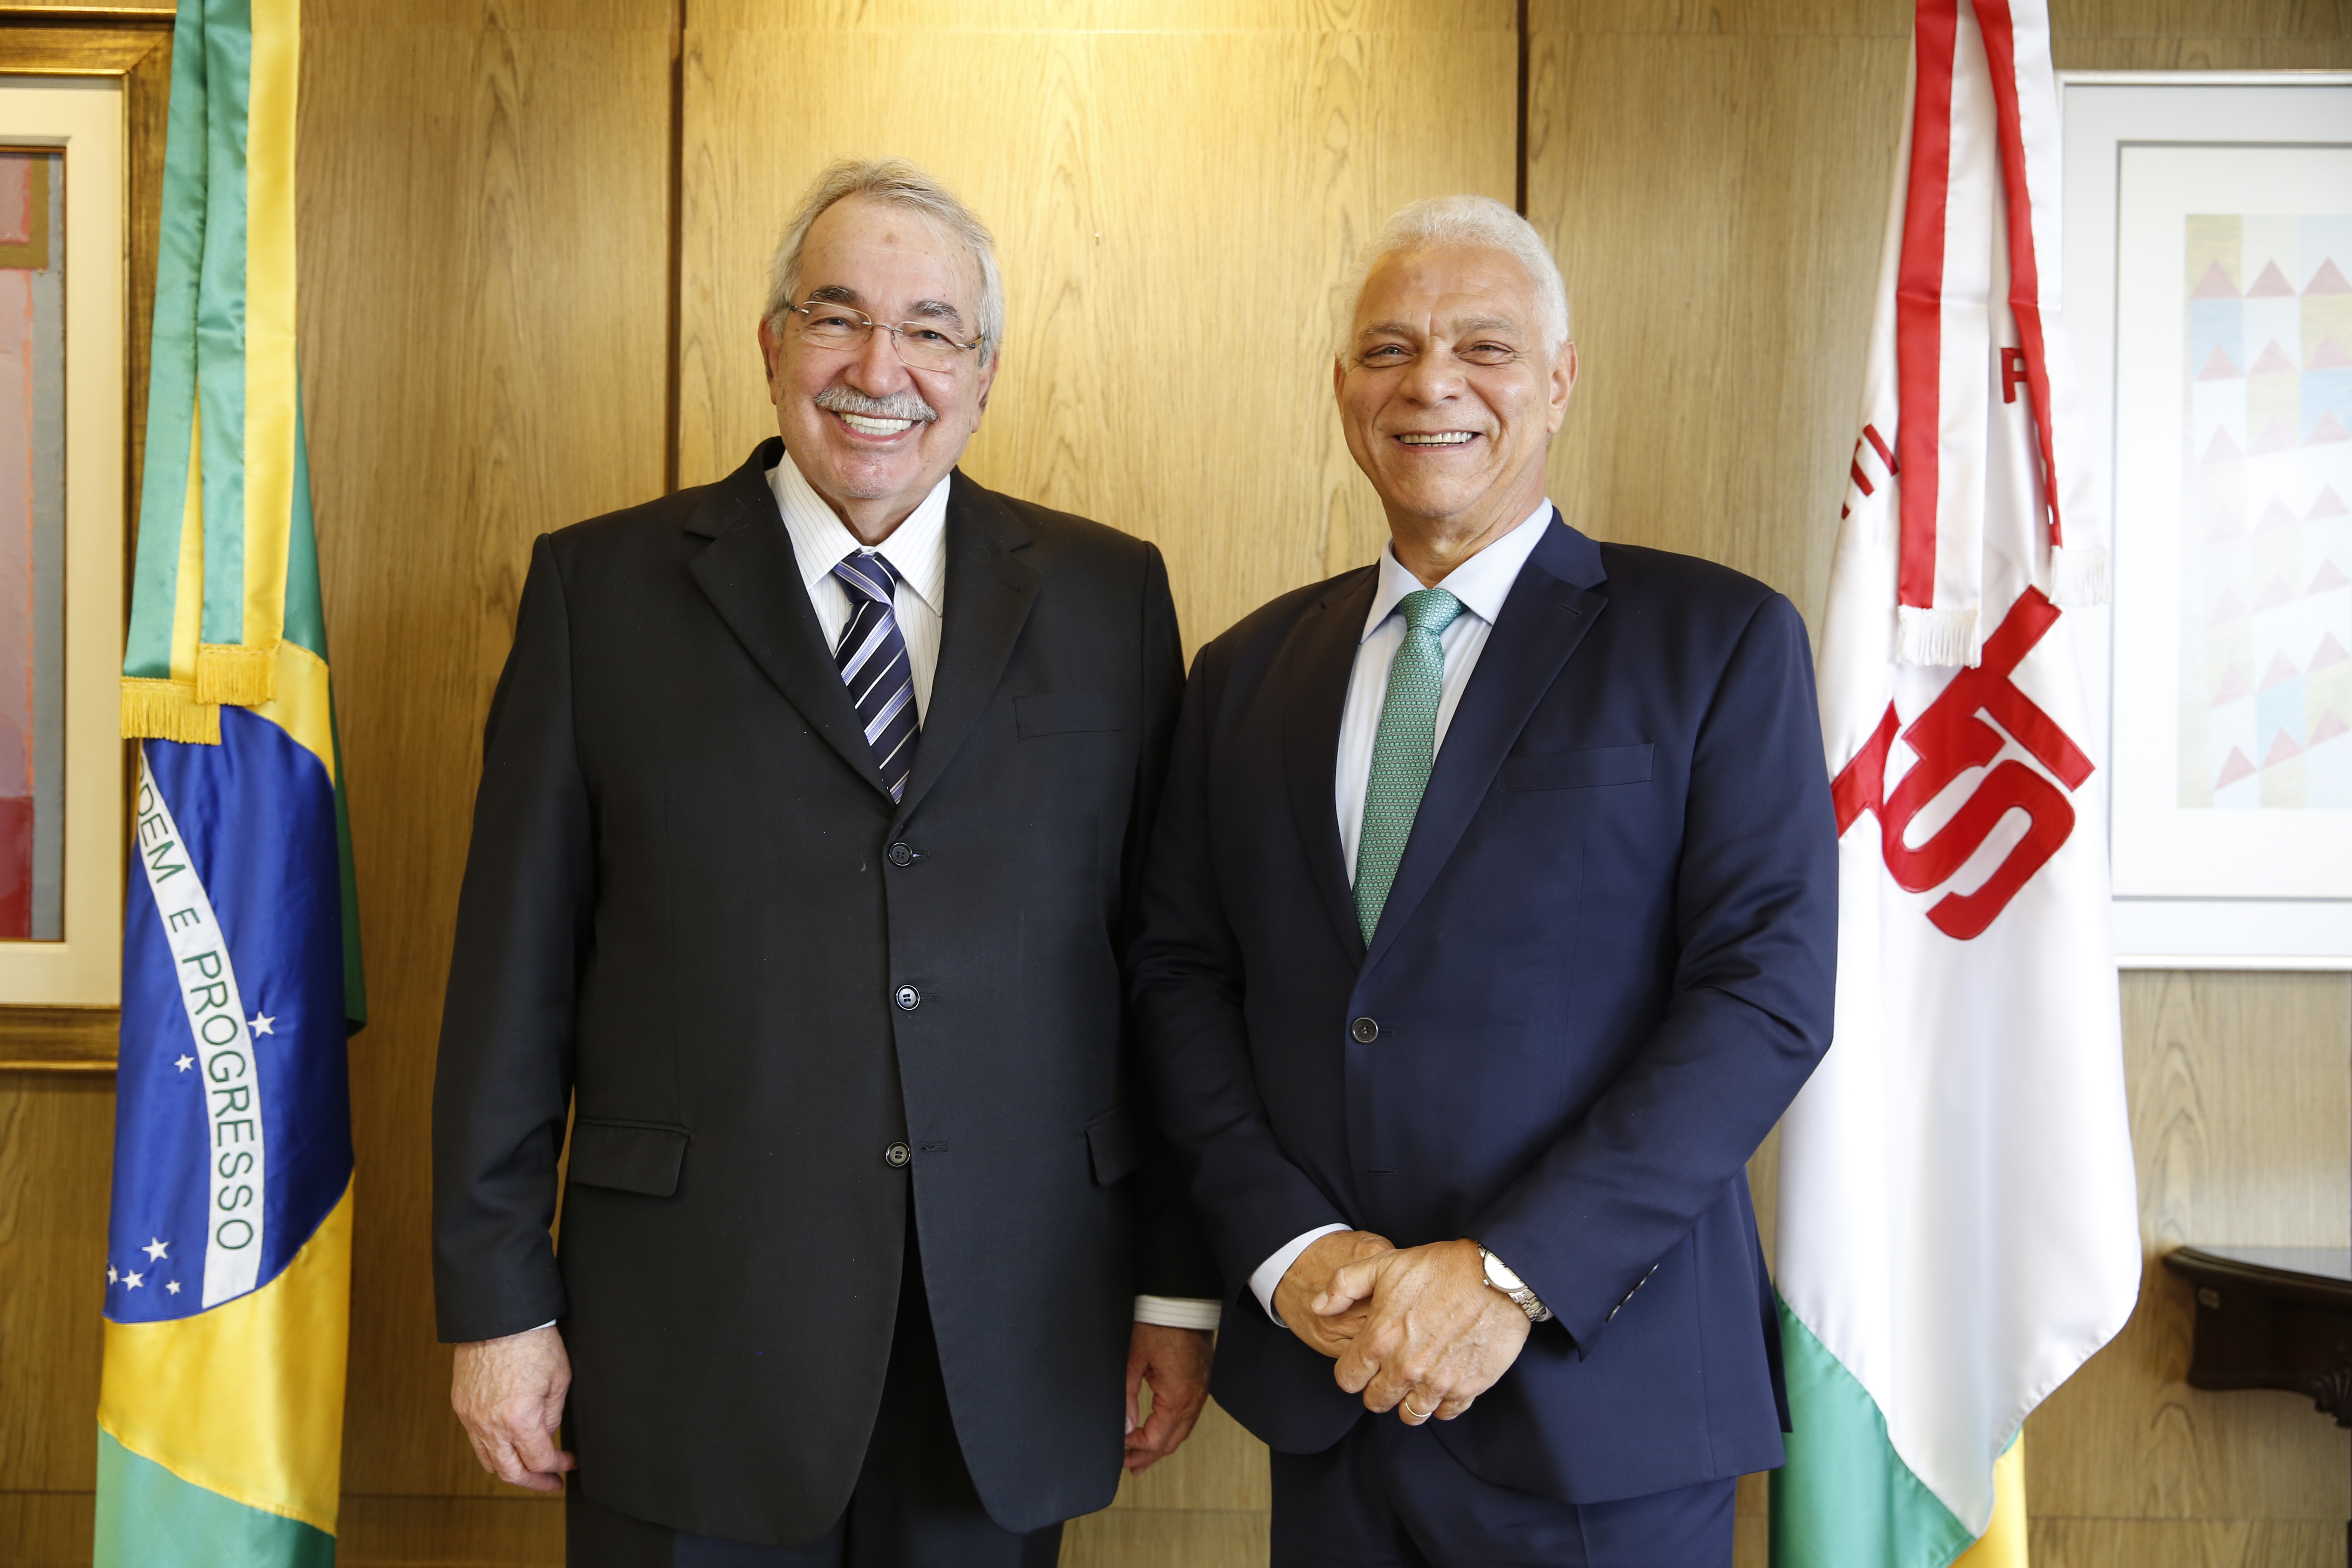 Ministro Emmanoel Pereira e ministro Alexandre de Souza Agra Belmonte. (Foto: Barbara Cabral - Secom/TST)